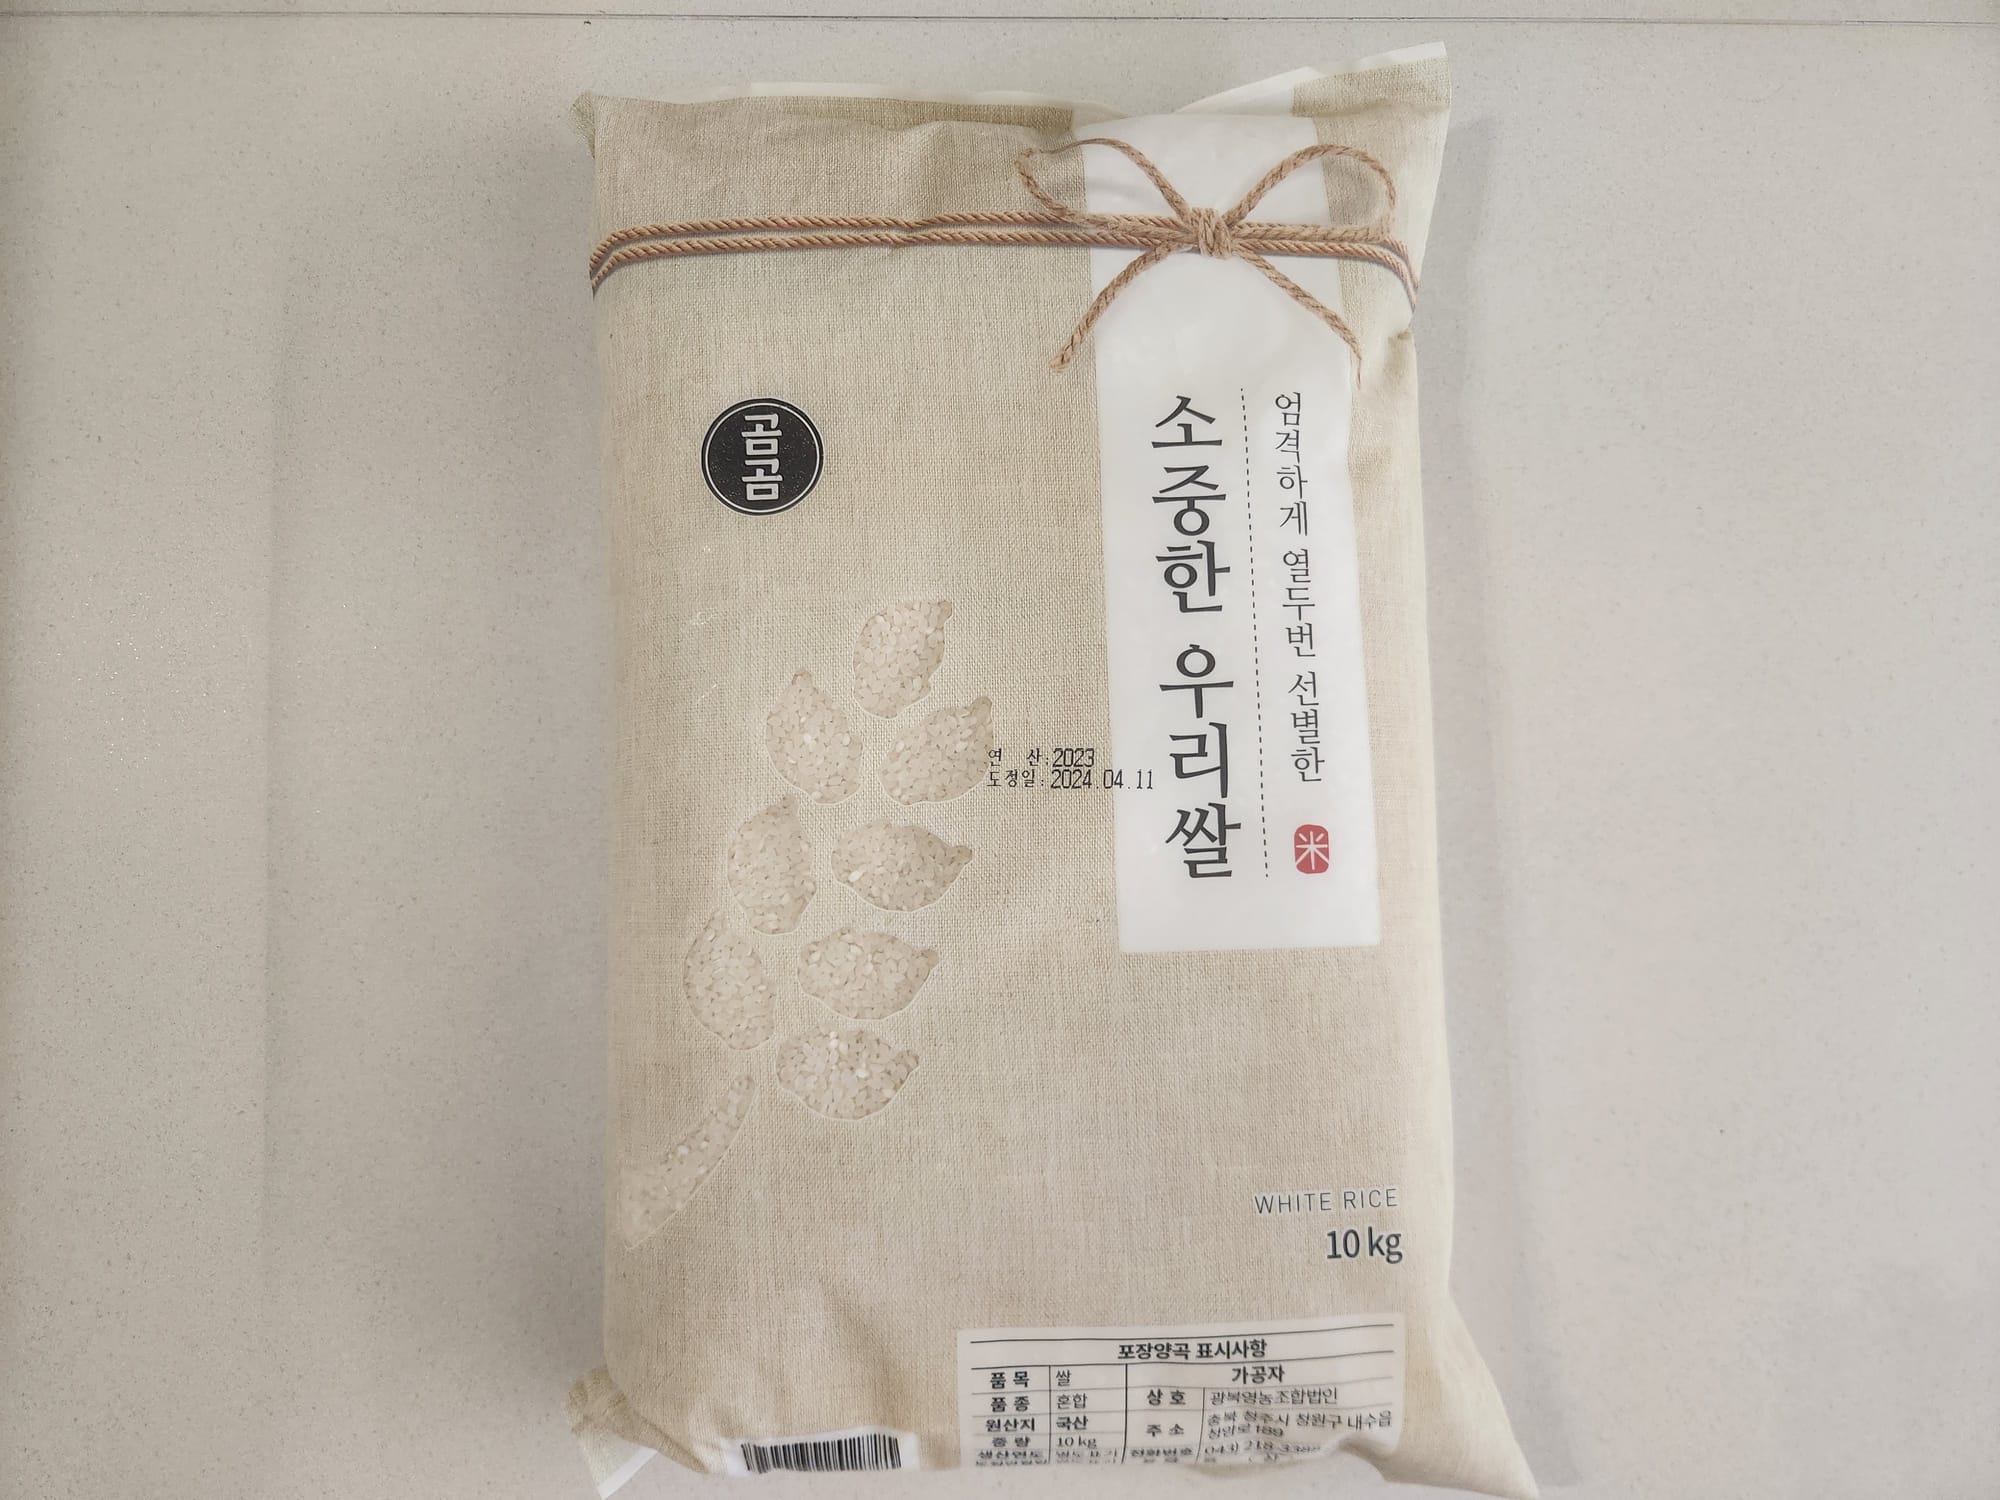 쿠팡에서 구매한 곰곰 쌀 10kg